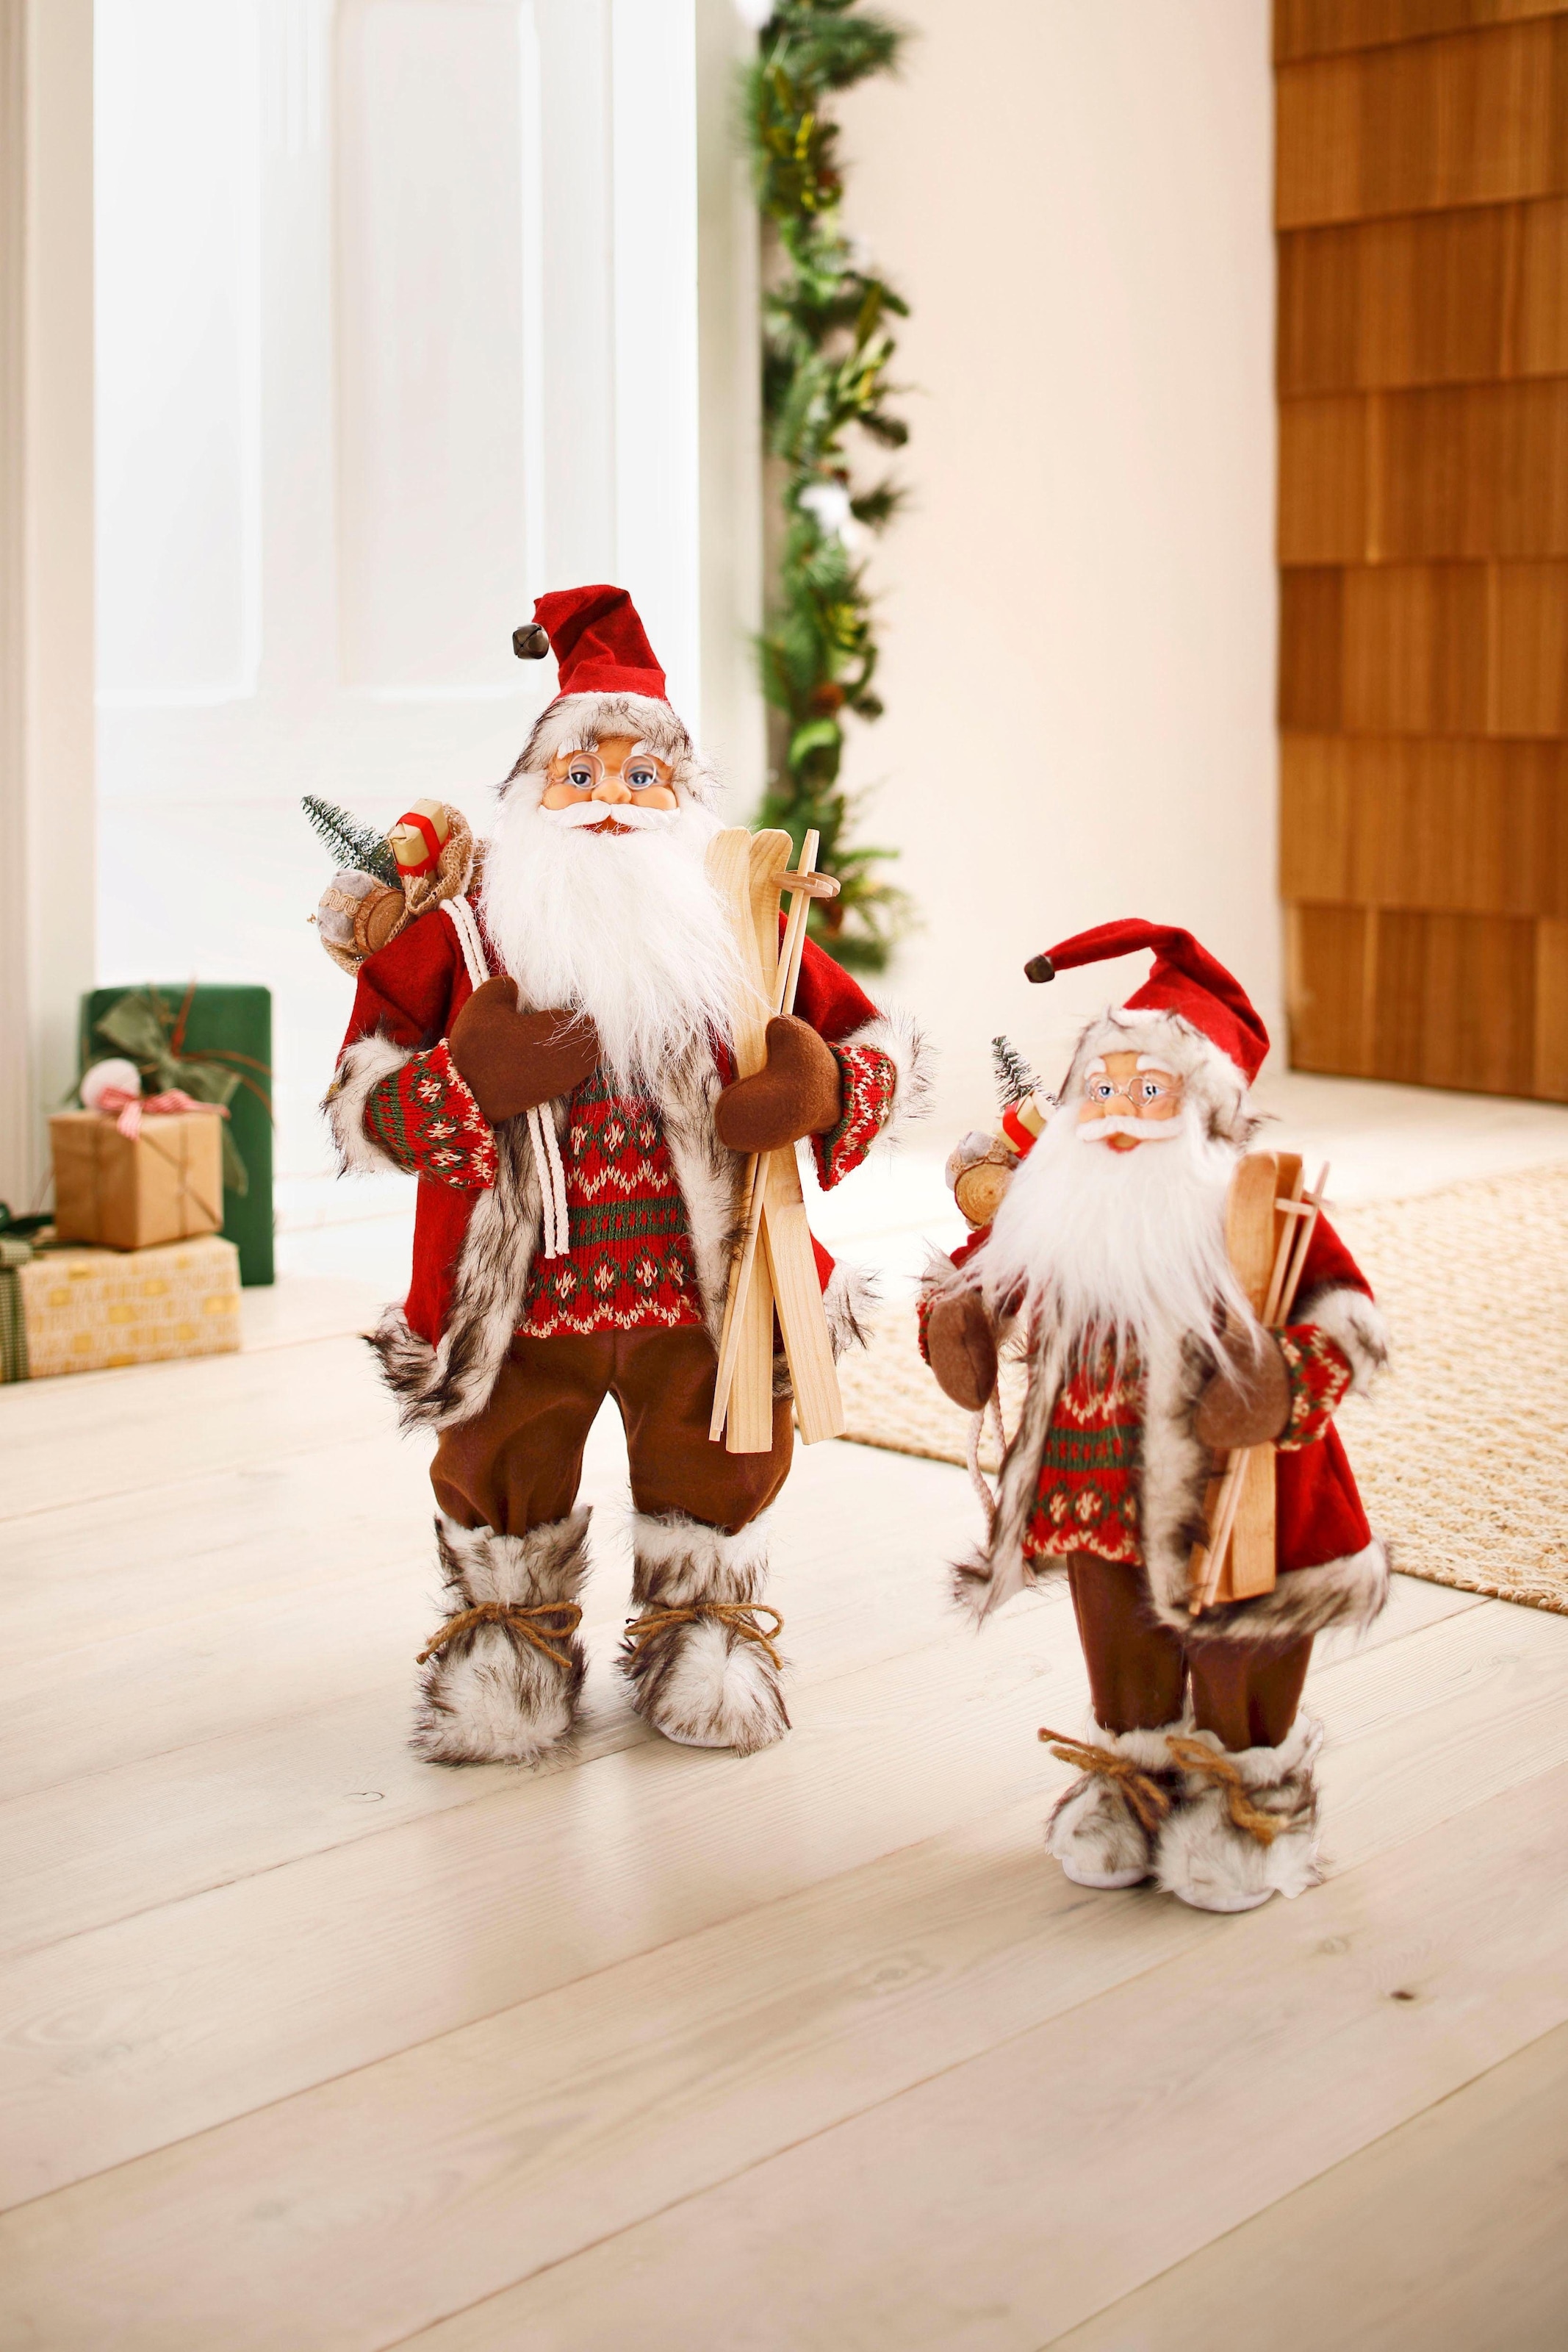 Dekofigur »Weihnachtsmann« mit weißem Bart und rotem Mantel | BAUR